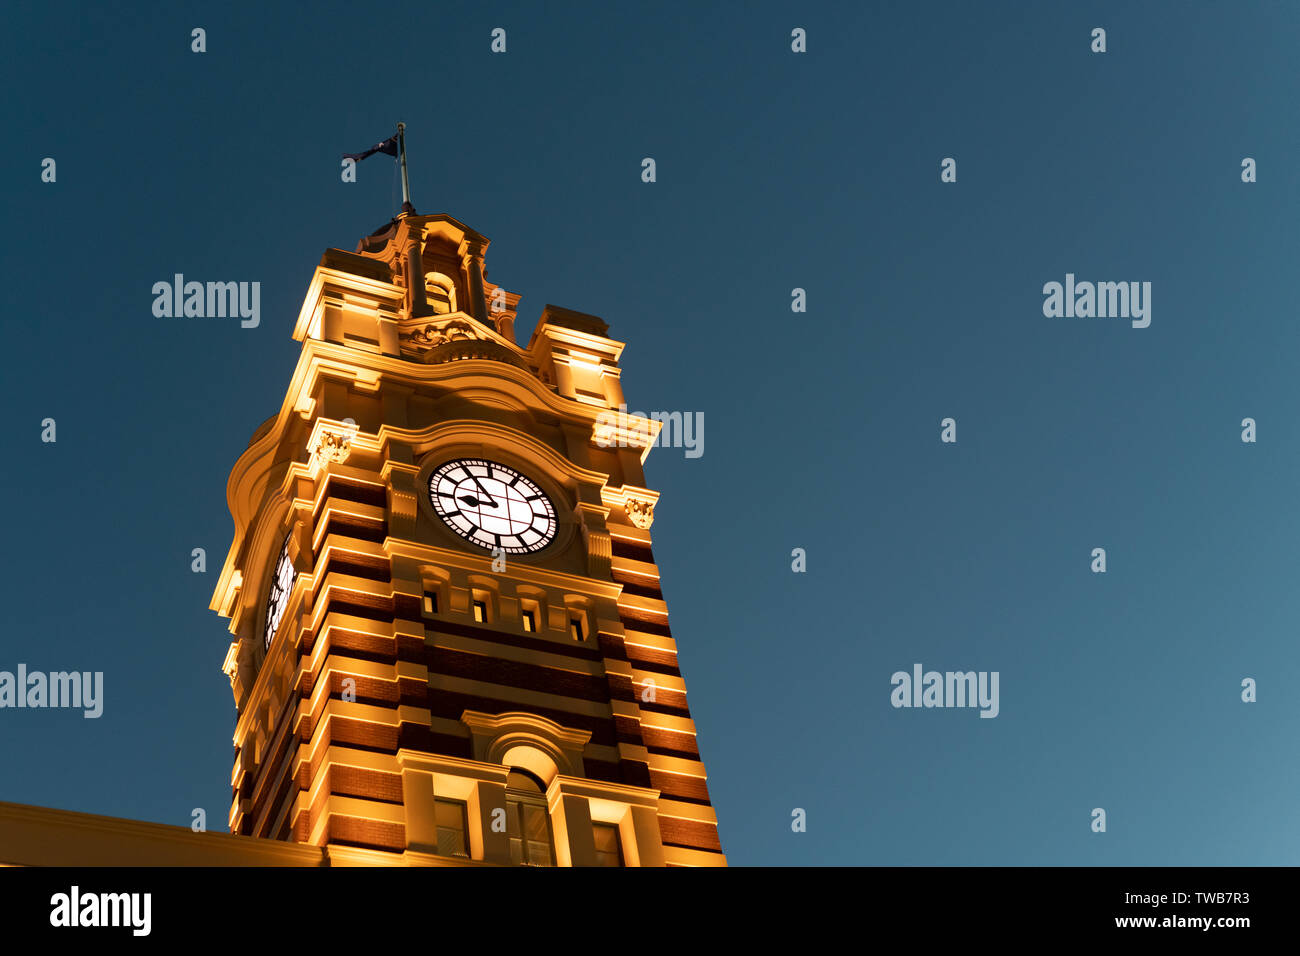 La torre del reloj de la estación de tren de Flinders Street al anochecer. Foto de stock